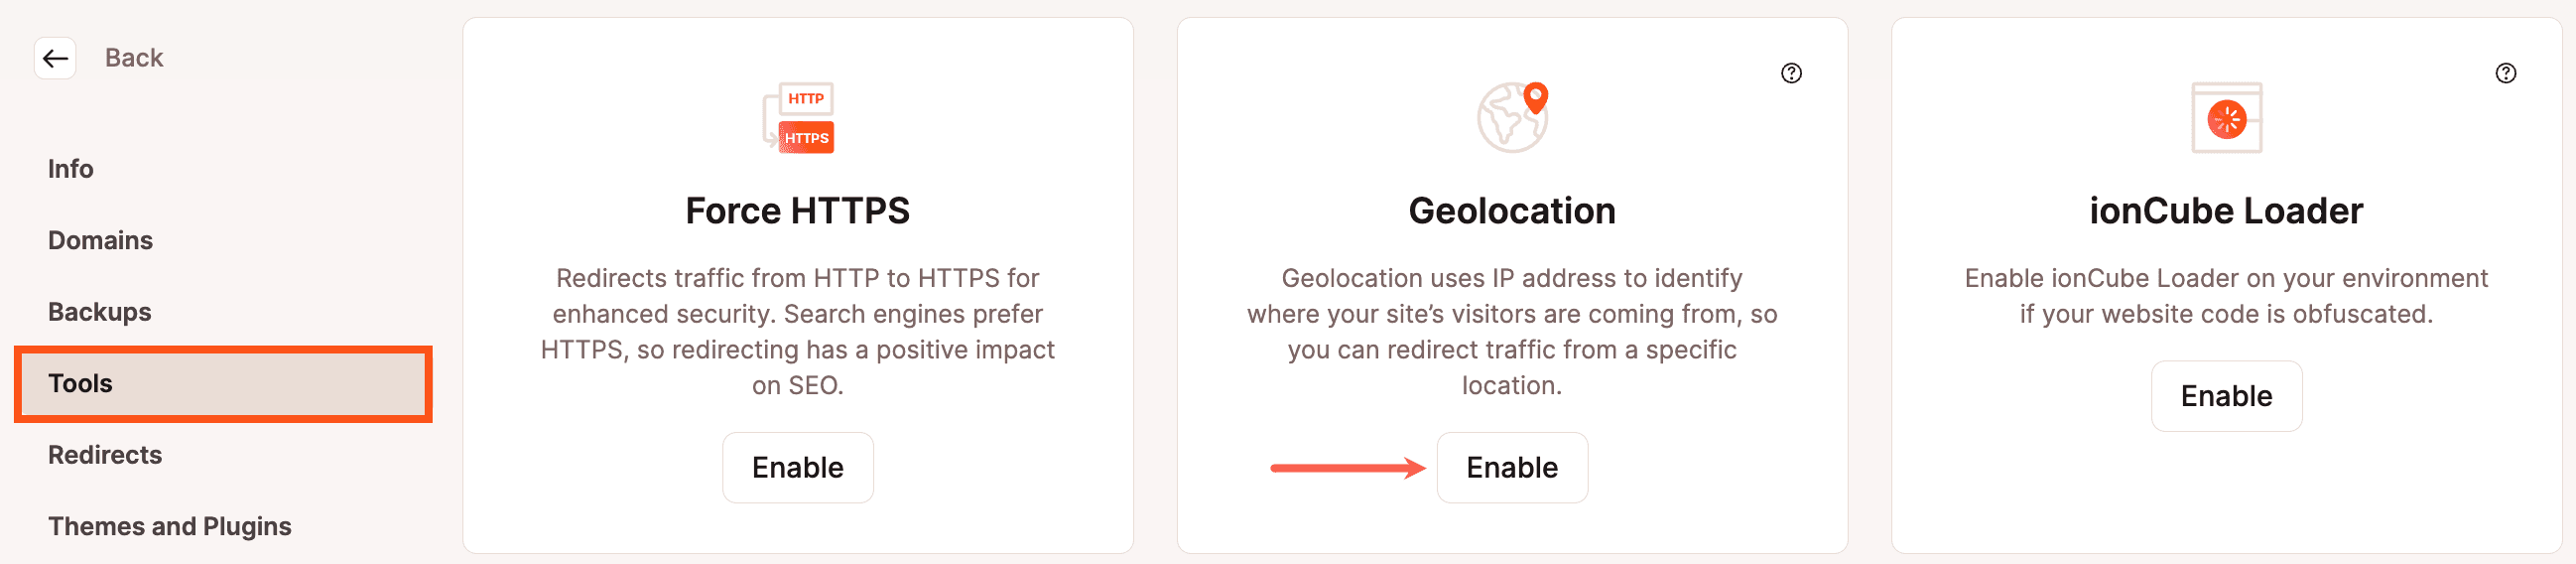 La geolocalización se puede activar desde la sección de Herramientas de MyKinsta.